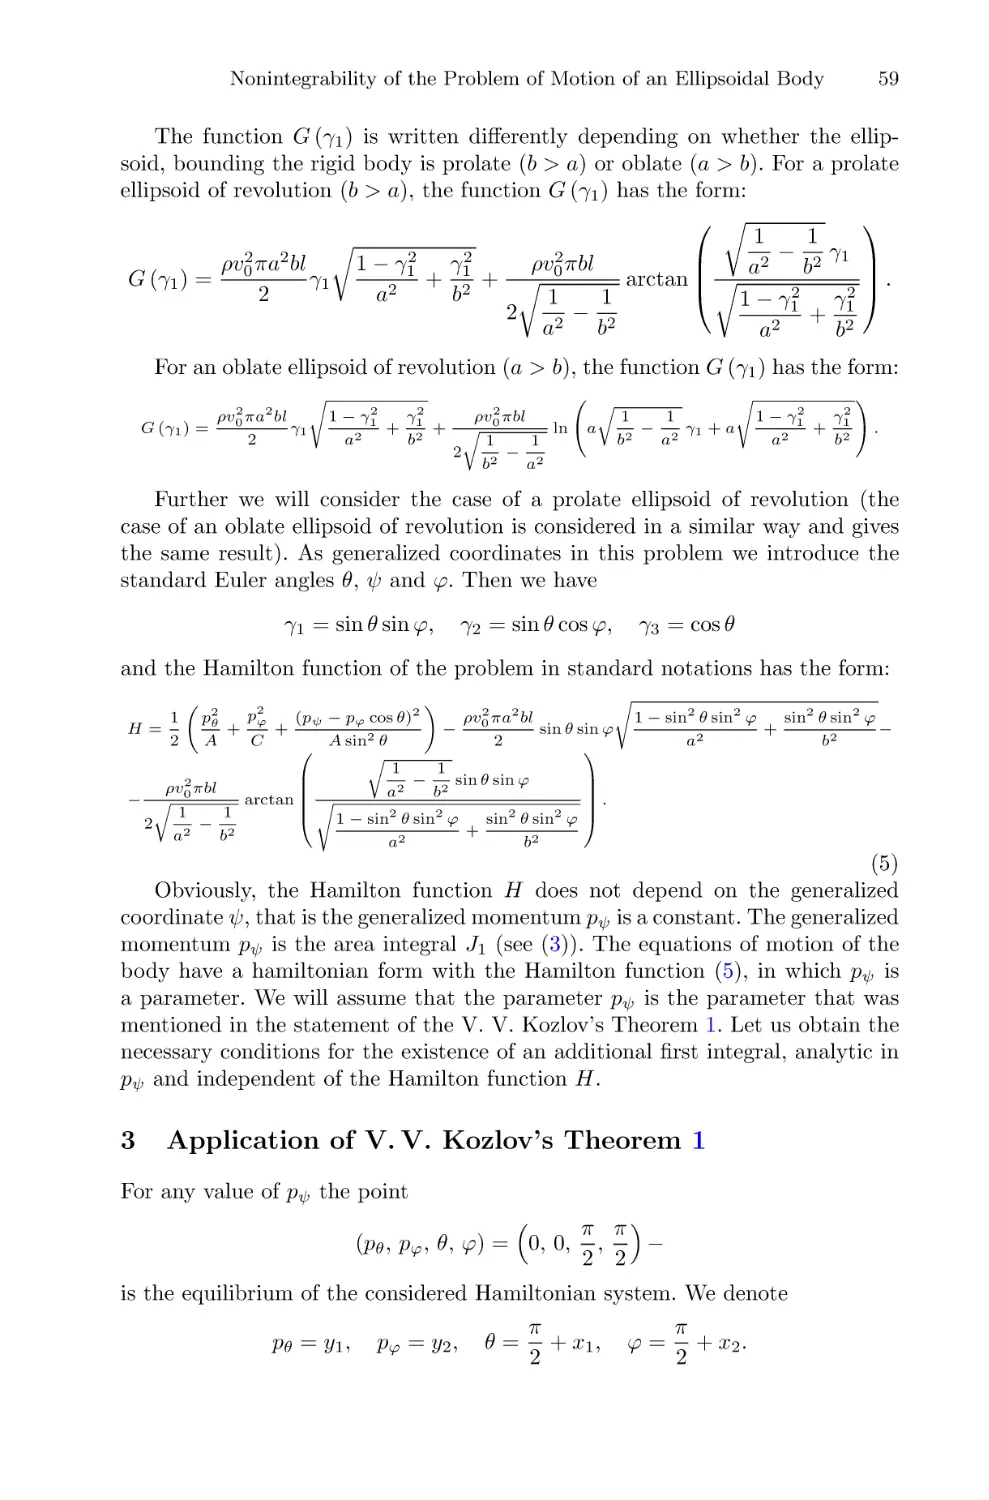 3 Application of V.V. Kozlov's Theorem 1